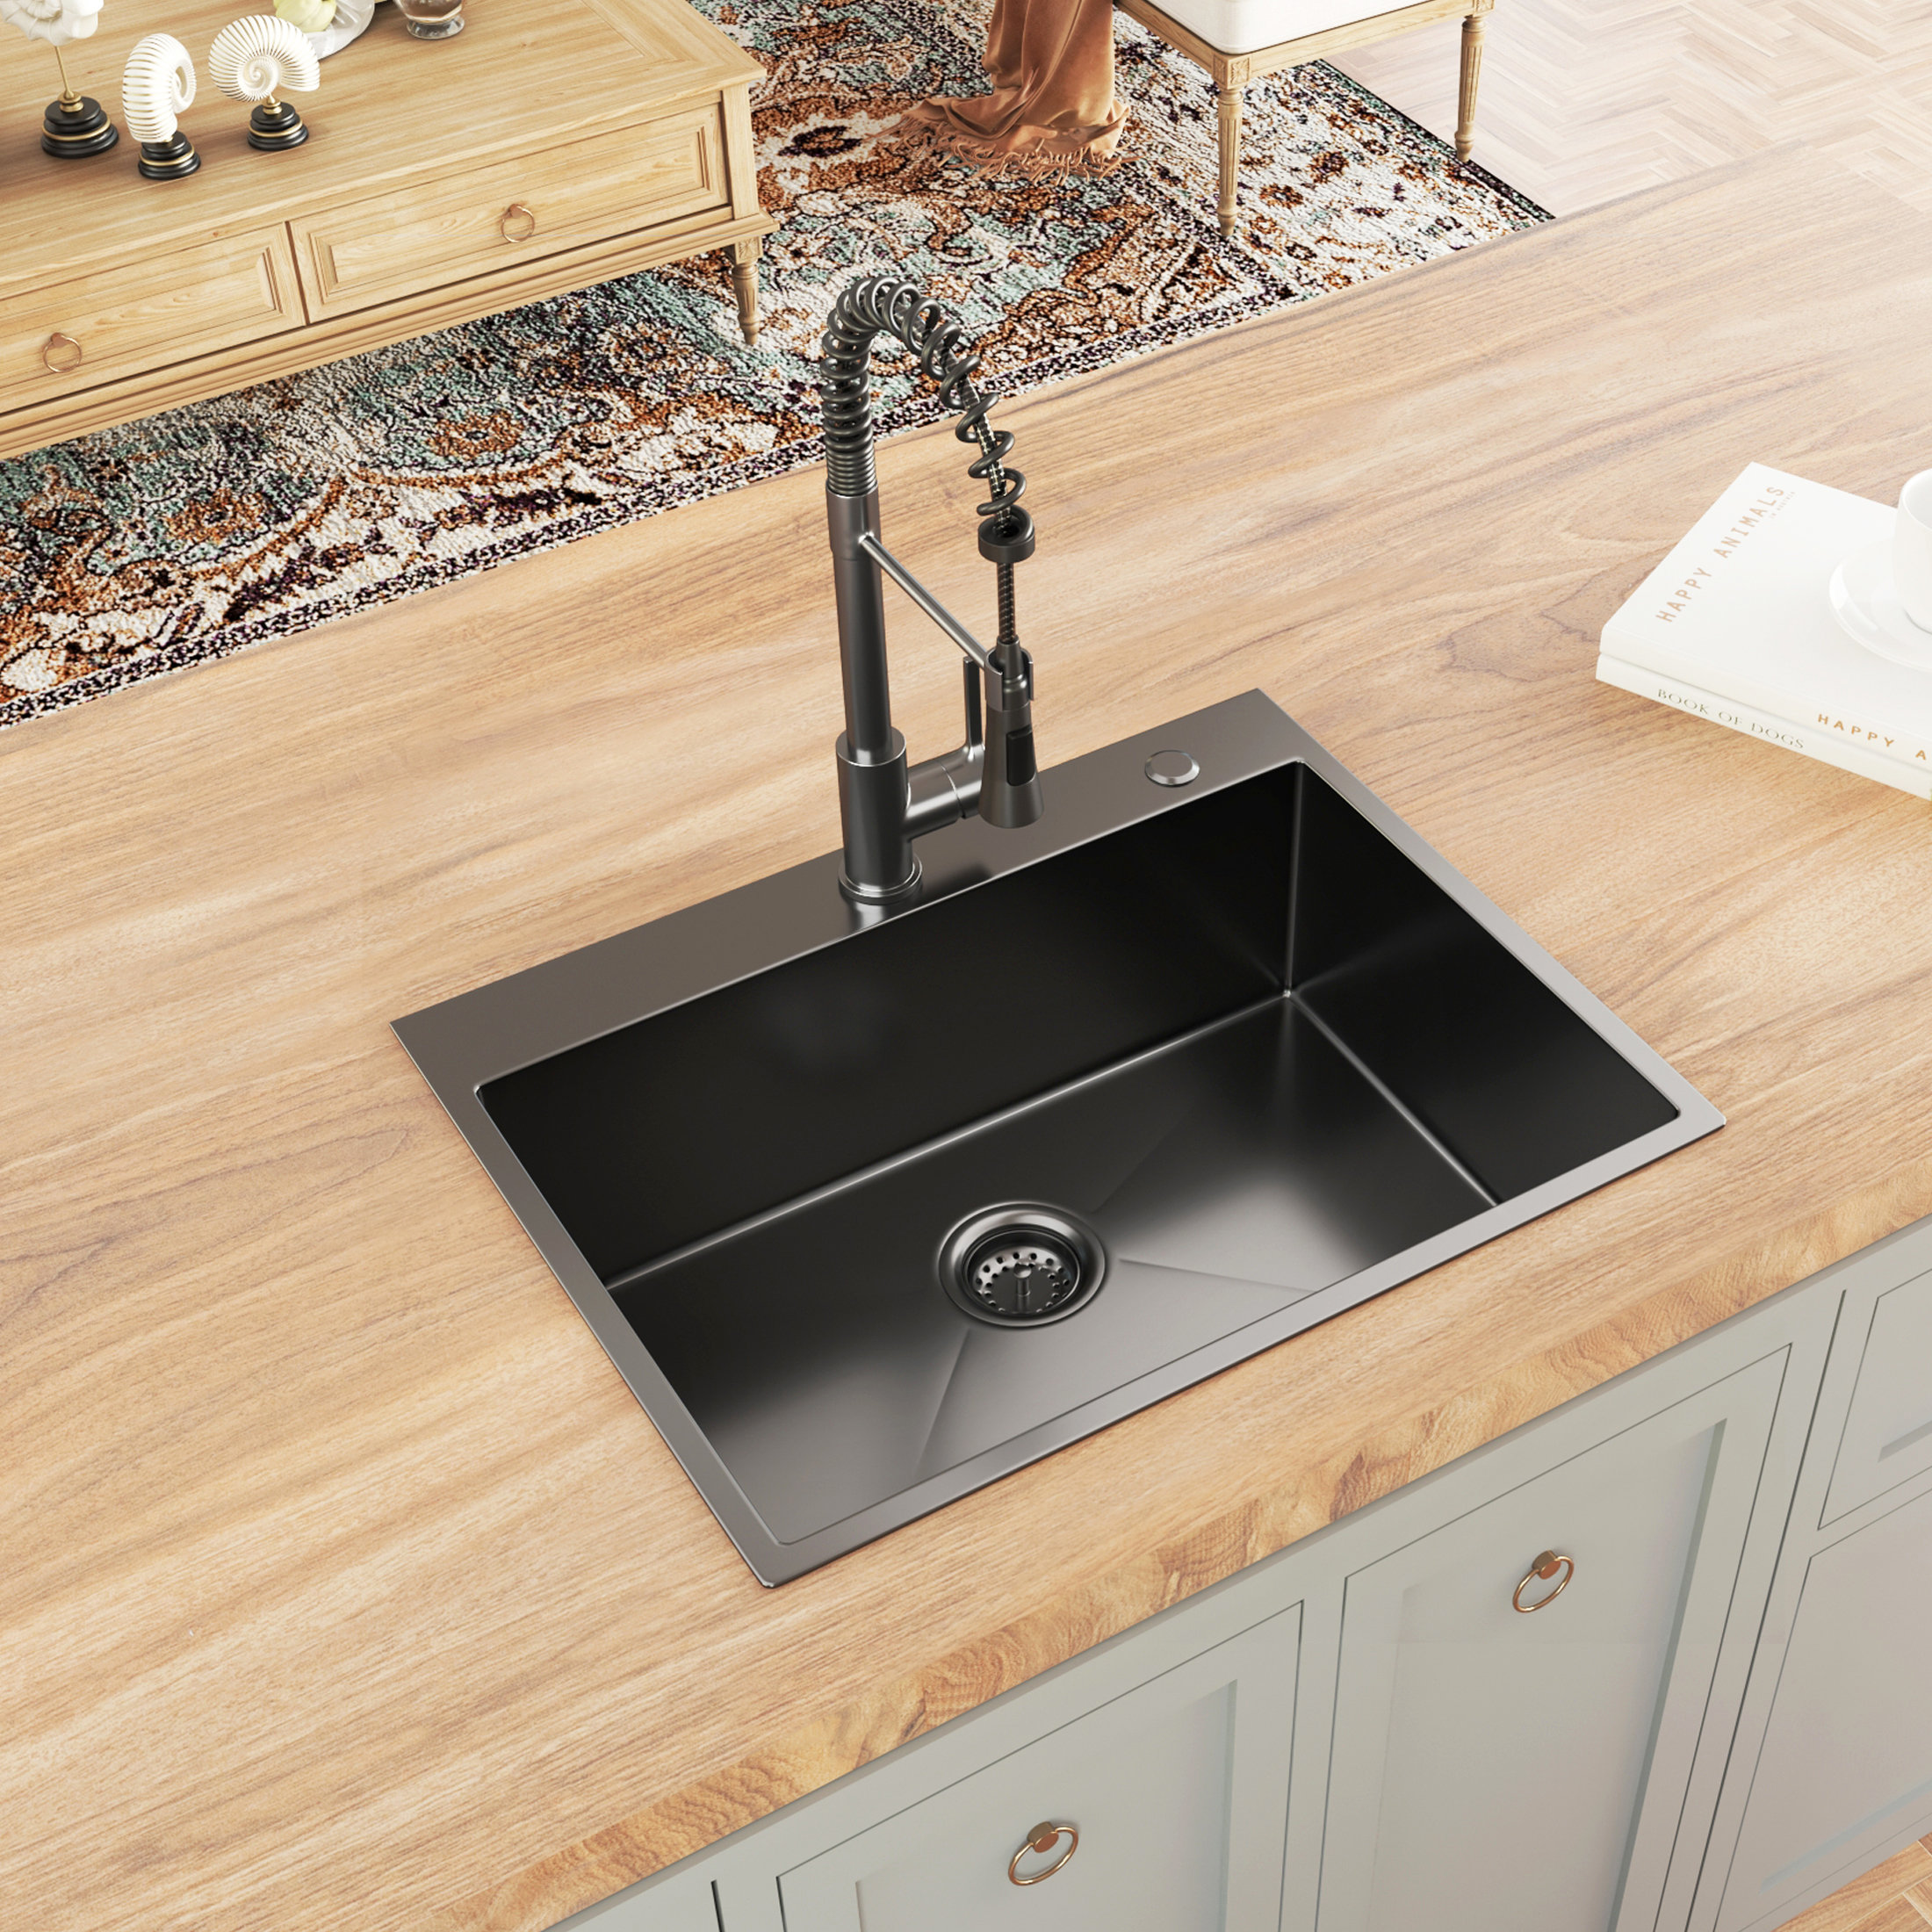 https://assets.wfcdn.com/im/83941154/compr-r85/2459/245908363/30-l-undermount-single-bowl-stainless-steel-kitchen-sink.jpg